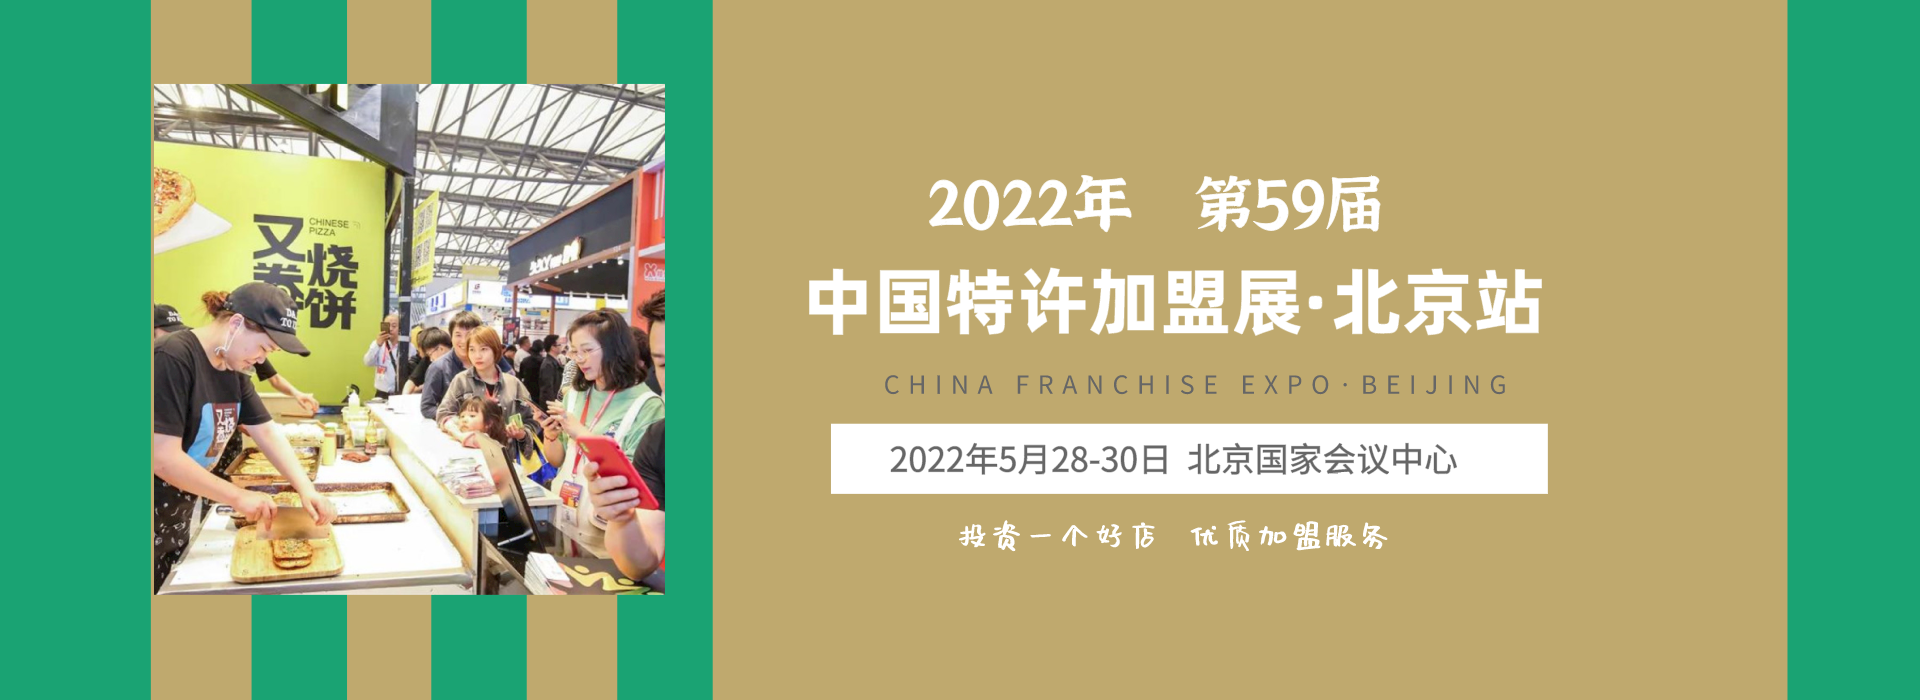 2022北京特许加盟展时间地点